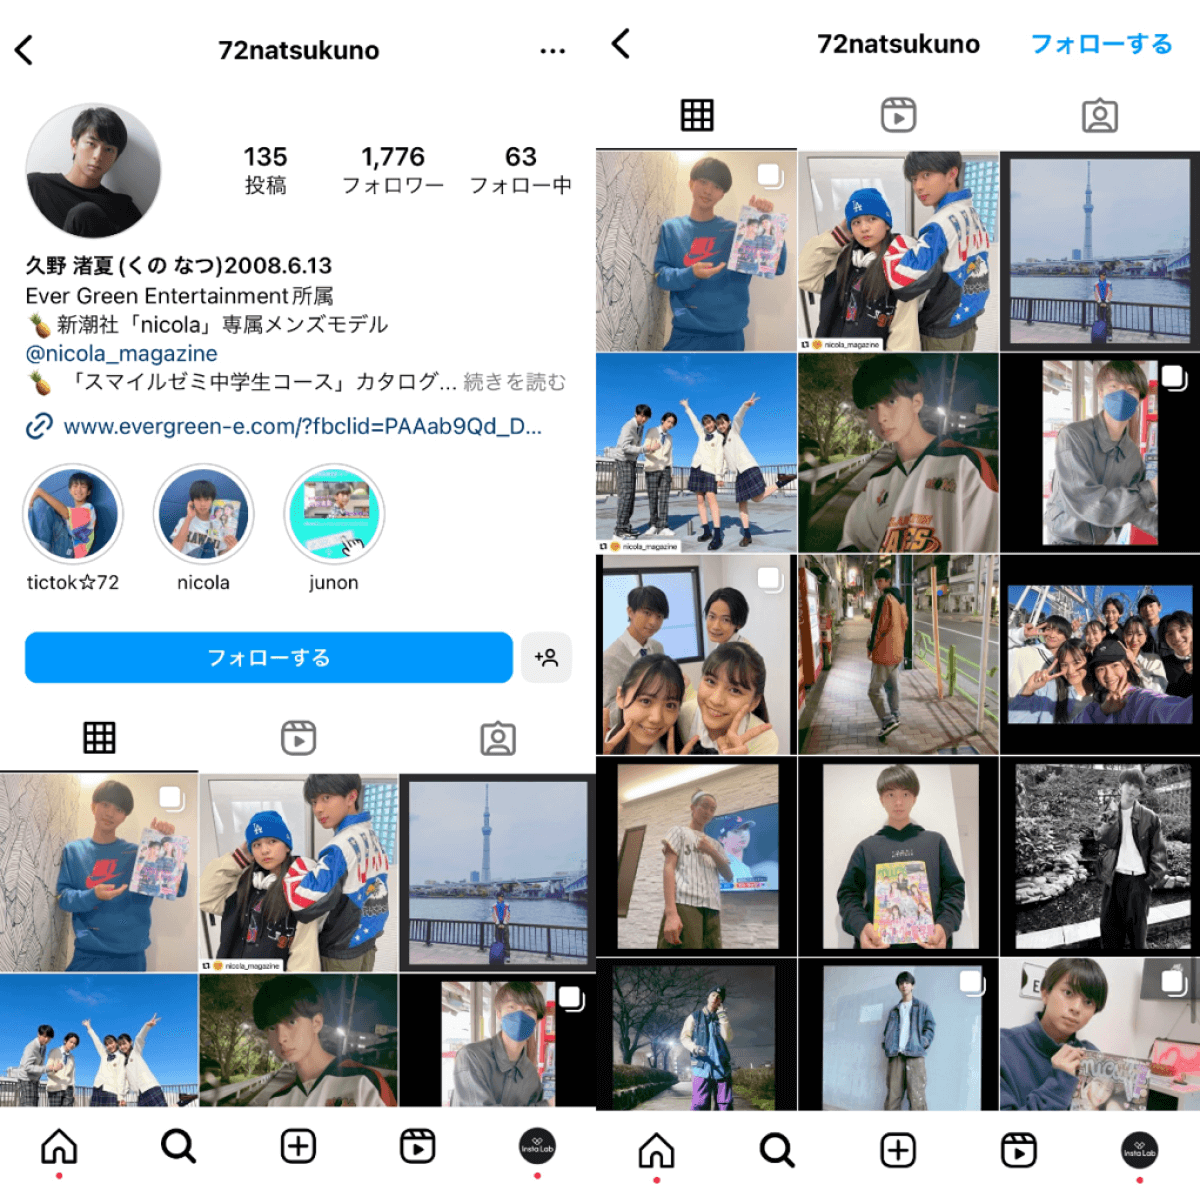 instagram-account-72natsukuno